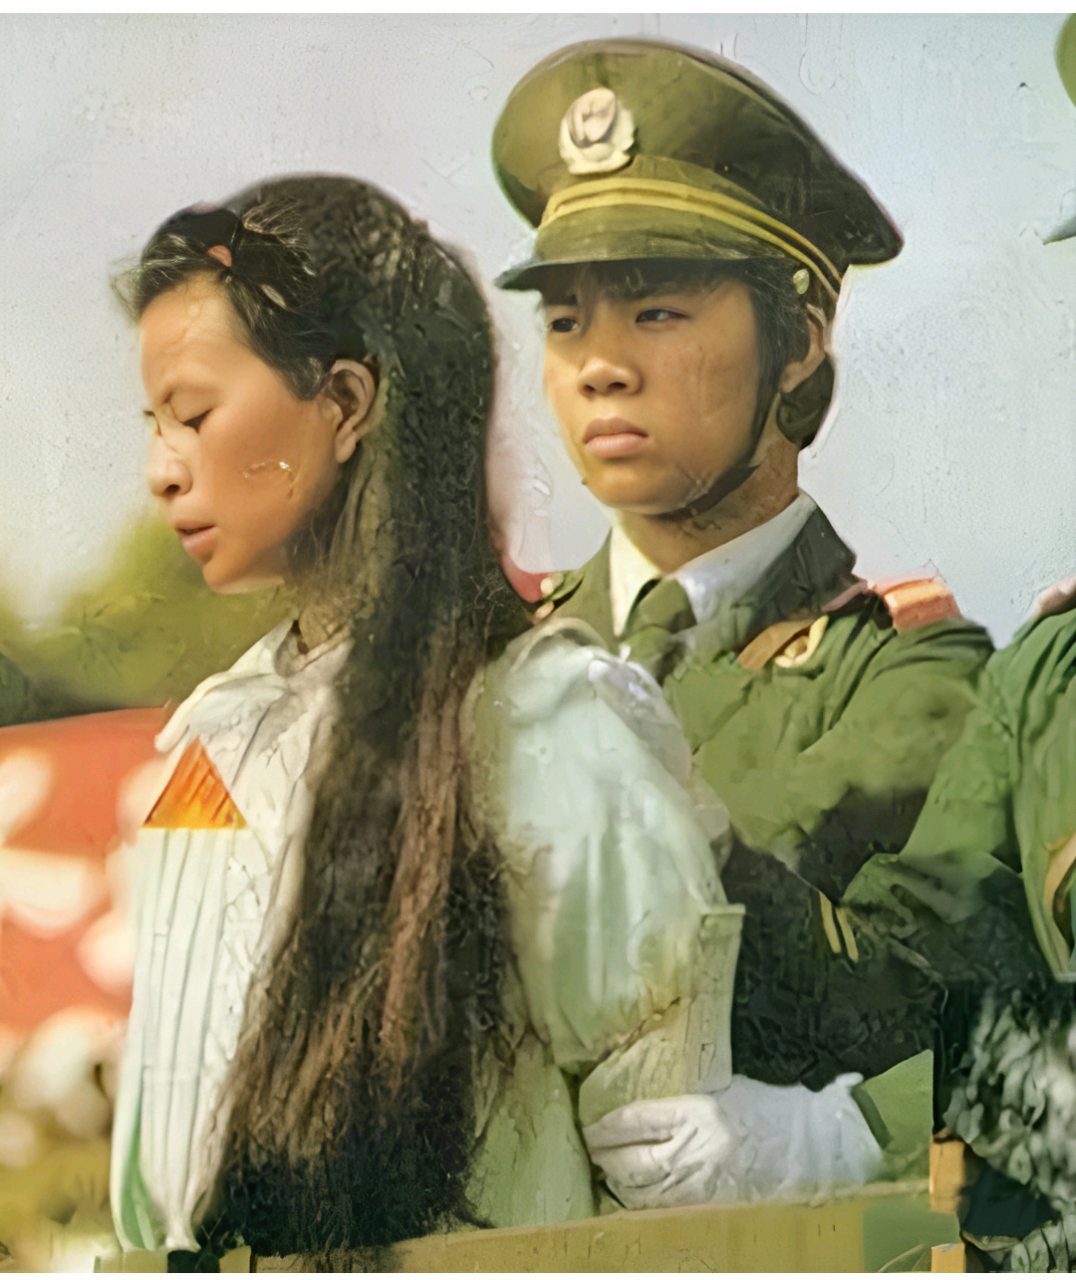 1998年,马艳红面临即将执行的死刑